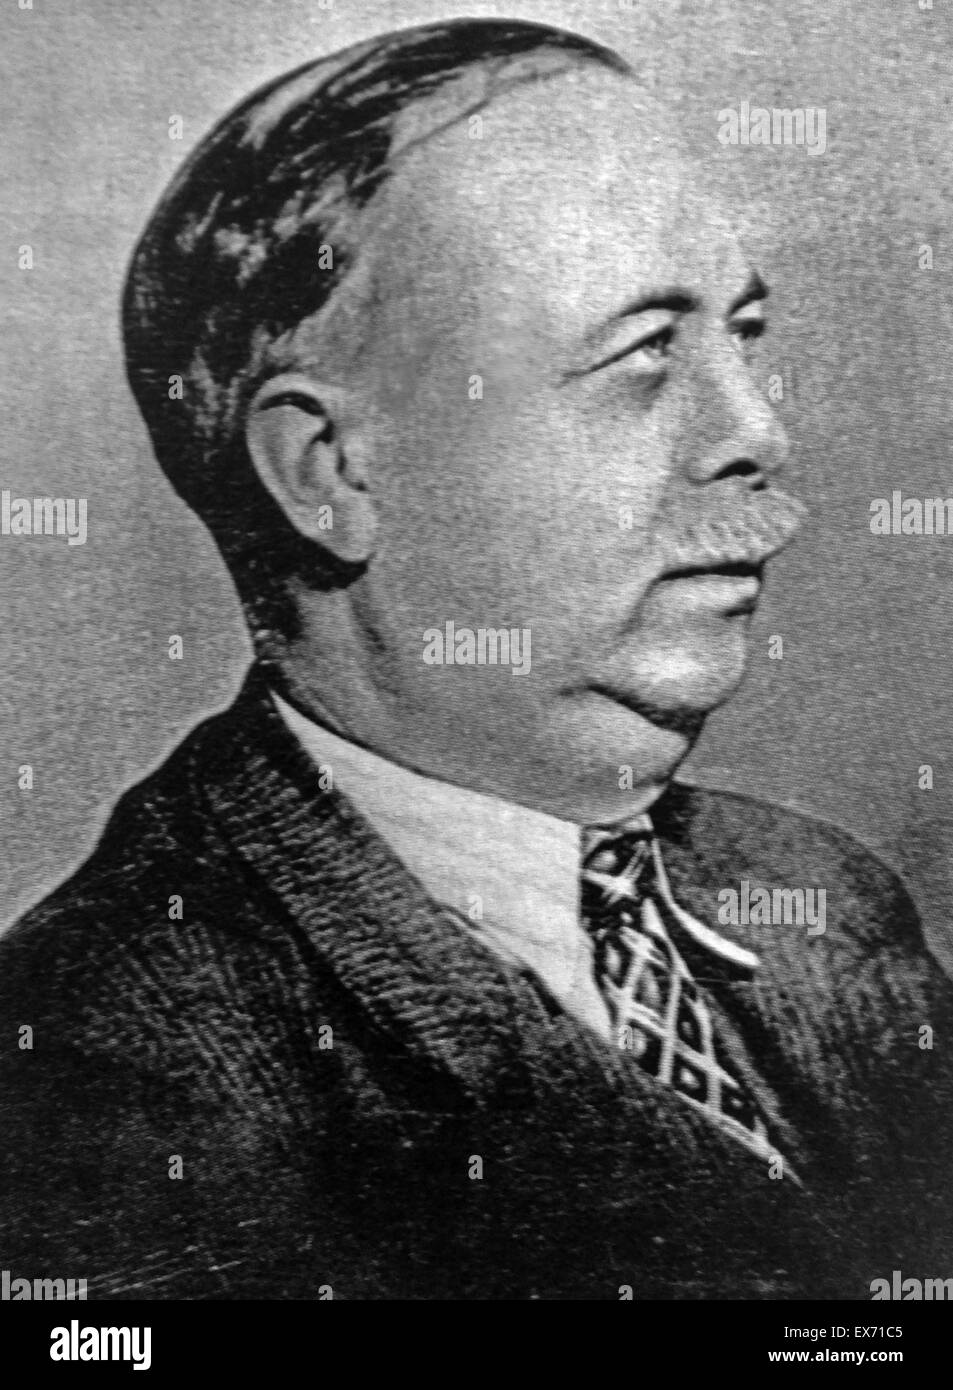 André Marty (1886 - 23 novembre 1956), figura di primo piano del Partito Comunista Francese. Egli è stato un membro dell'Assemblea nazionale e segretario del Comintern dal 1935 al 1944. Commissario politico delle Brigate internazionali durante la Guerra Civile Spagnola da Foto Stock